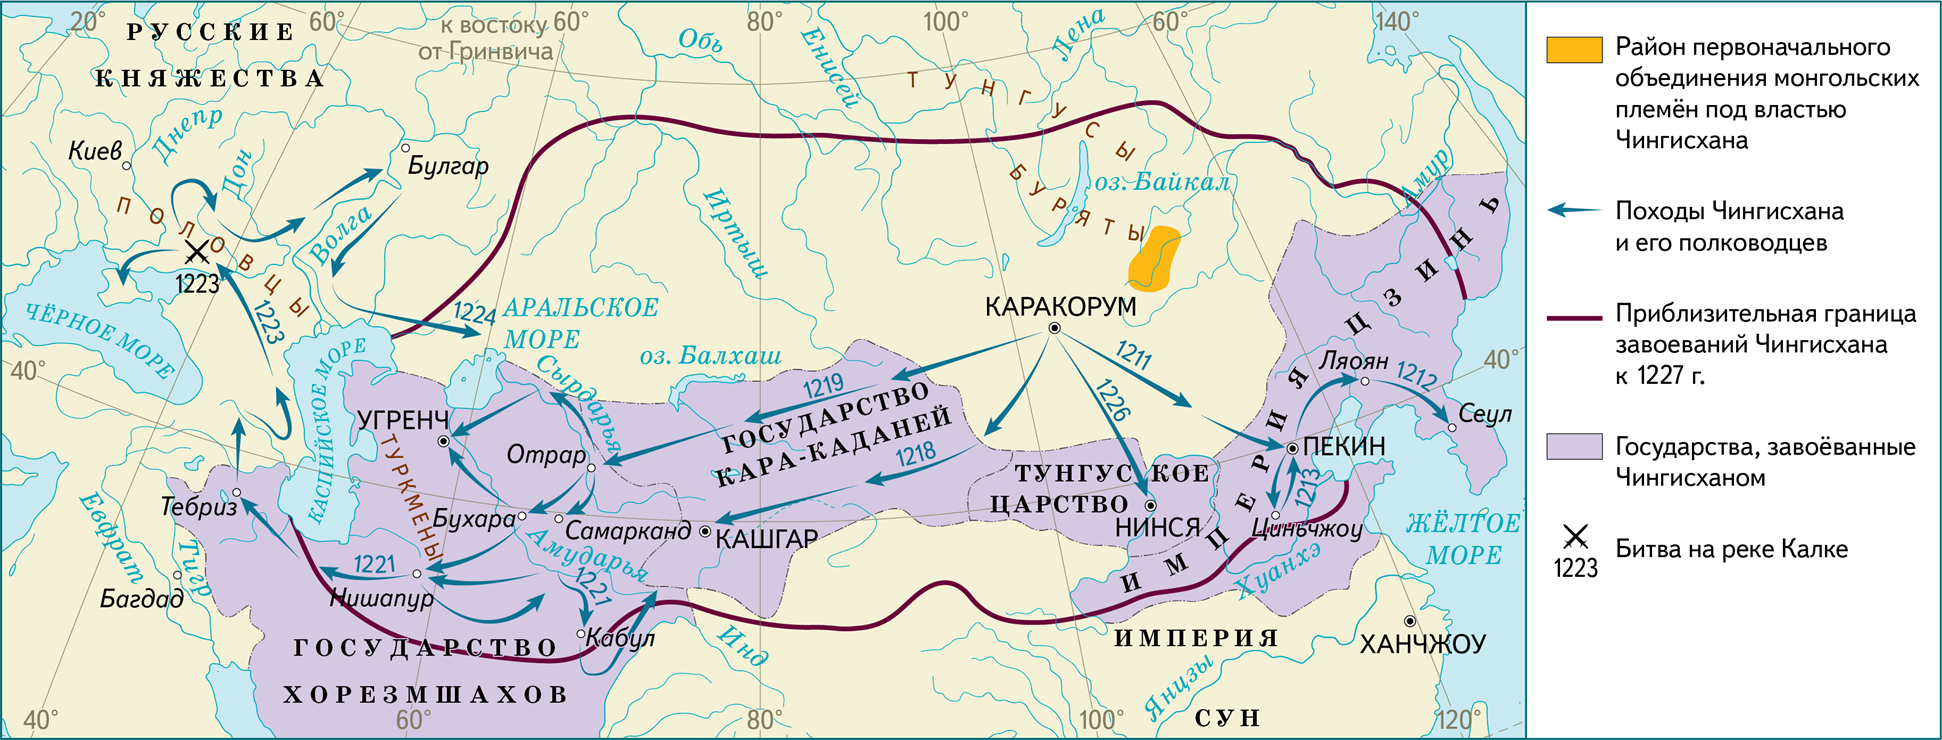 Великие ханы после чингисхана. Монгольская Империя 1227. Завоевания Чингисхана карта. Карта завоеваний Монголии. 1206-1227 Правление Чингисхана.